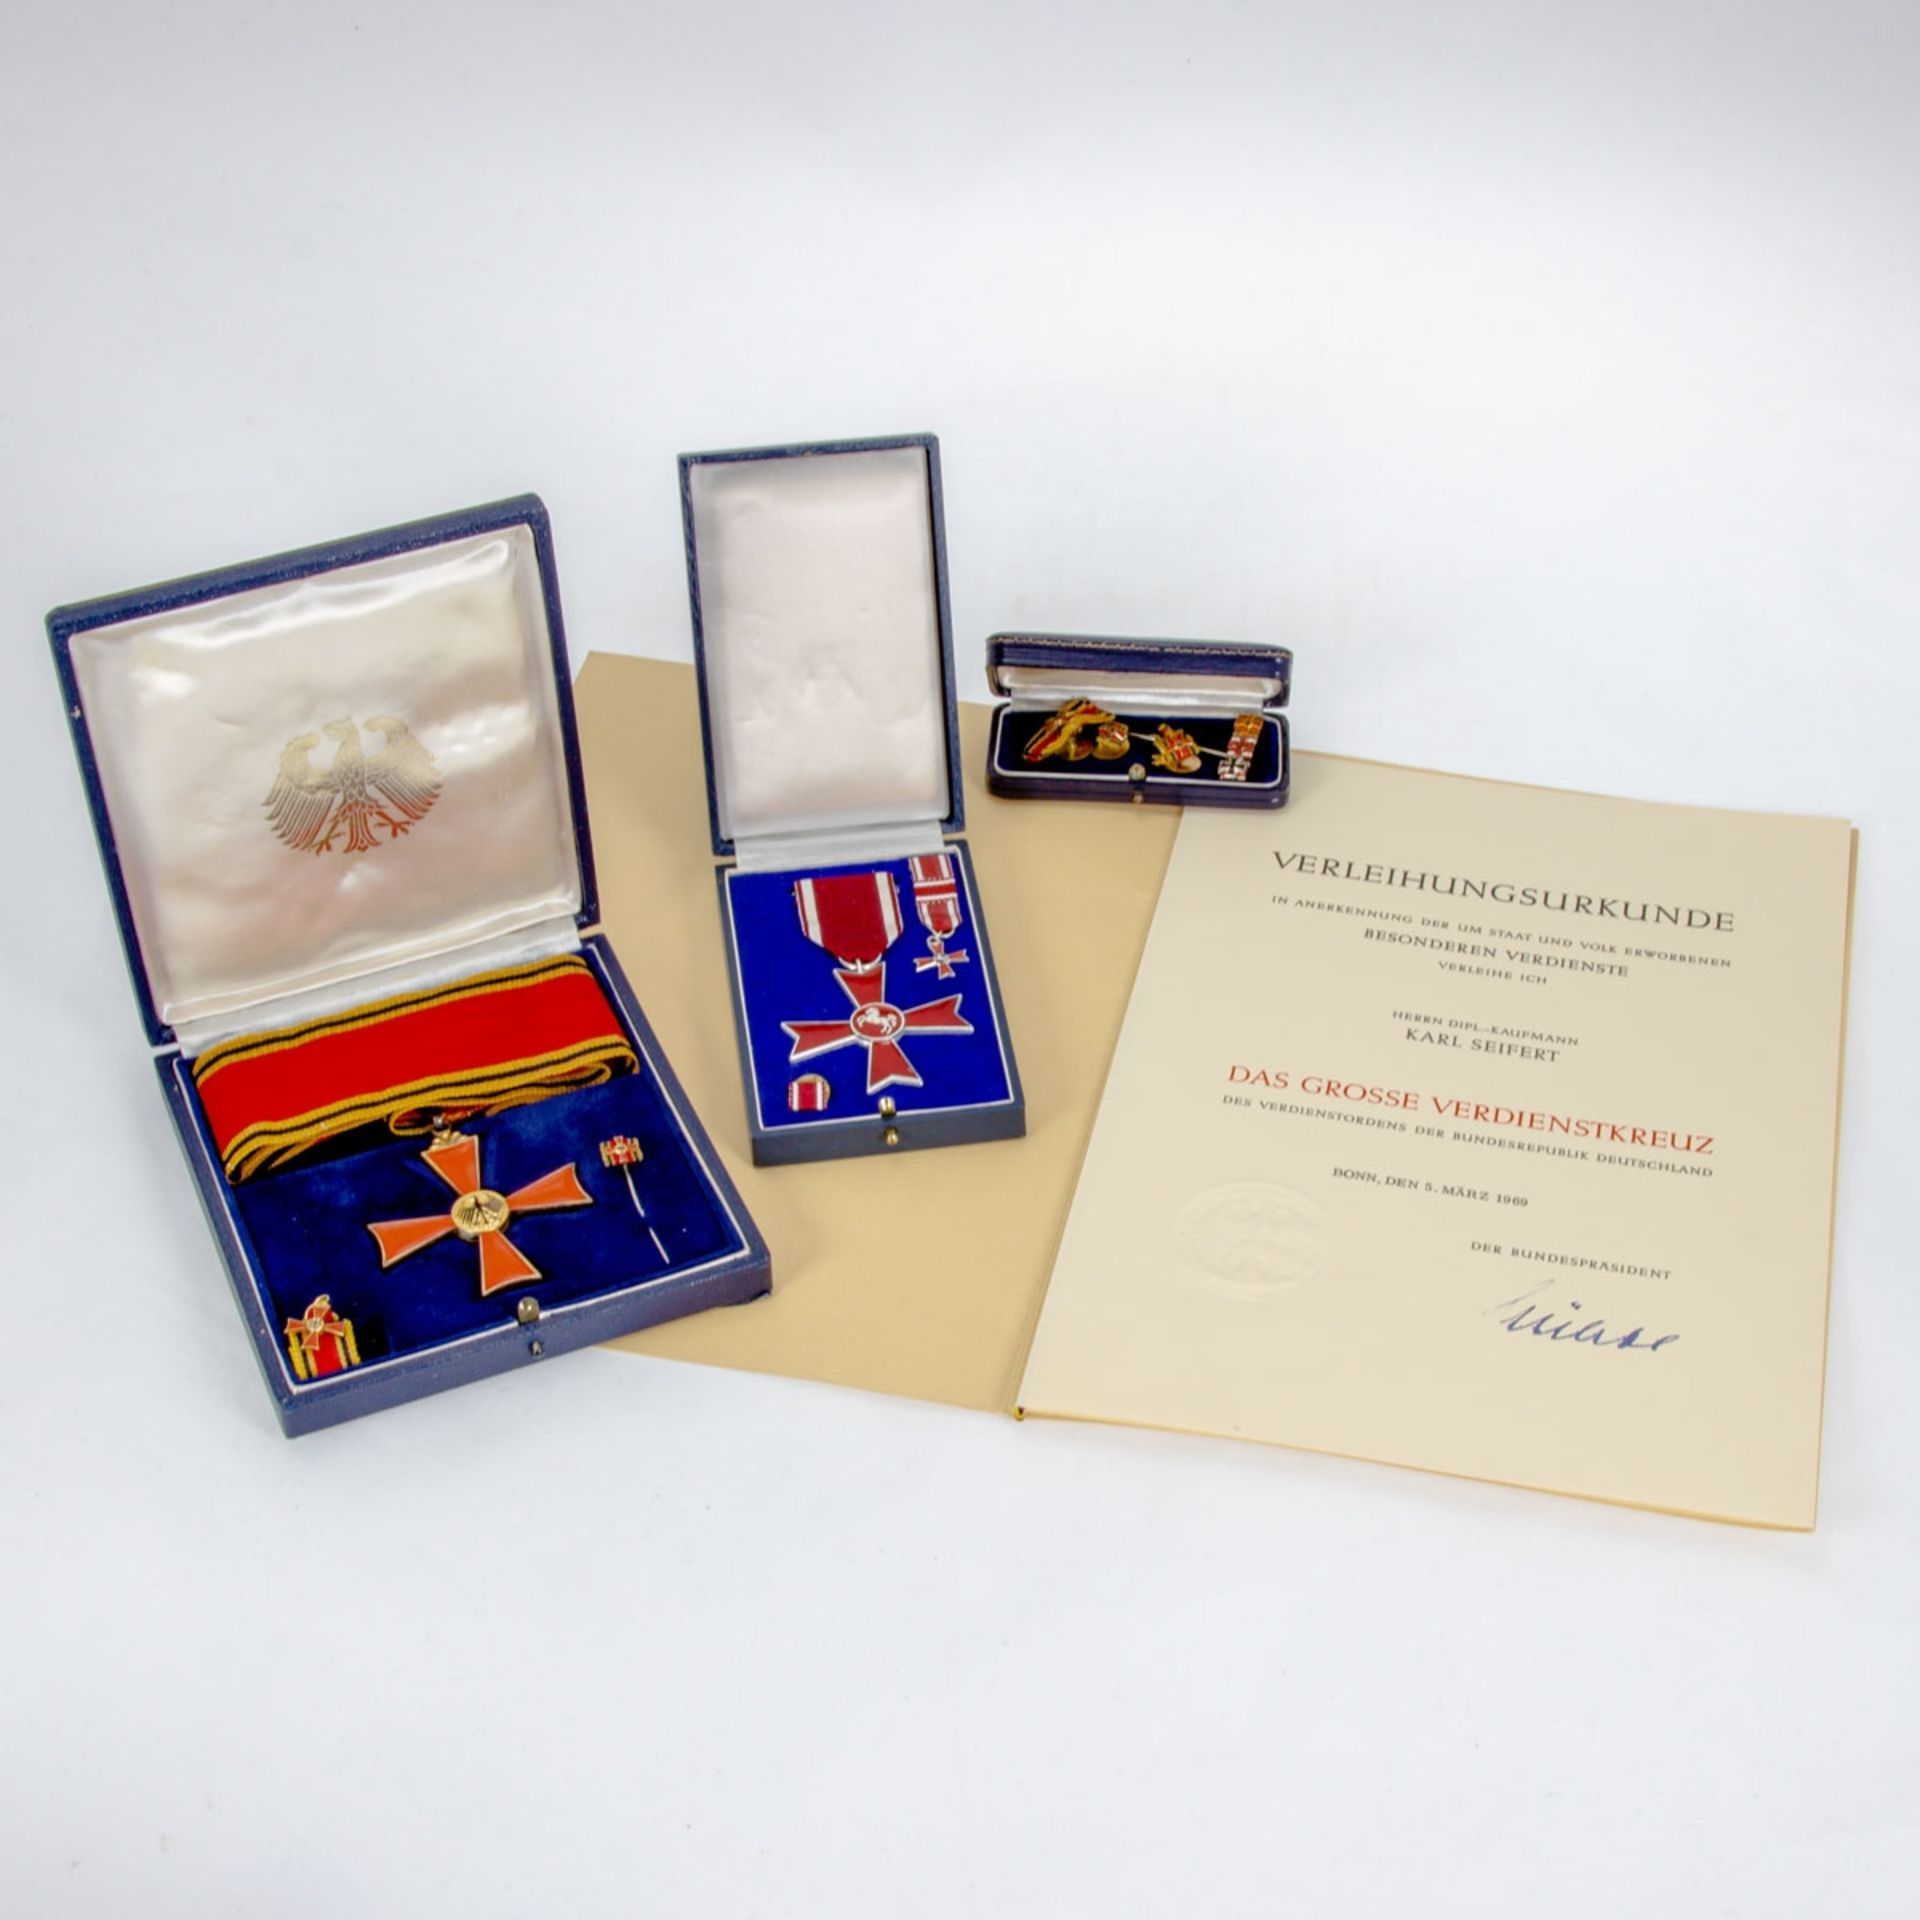 Großes Verdienstkreuz mit Verleihungsurkunde Verdienstkreuz am Halsband, Miniatur sowie Anst